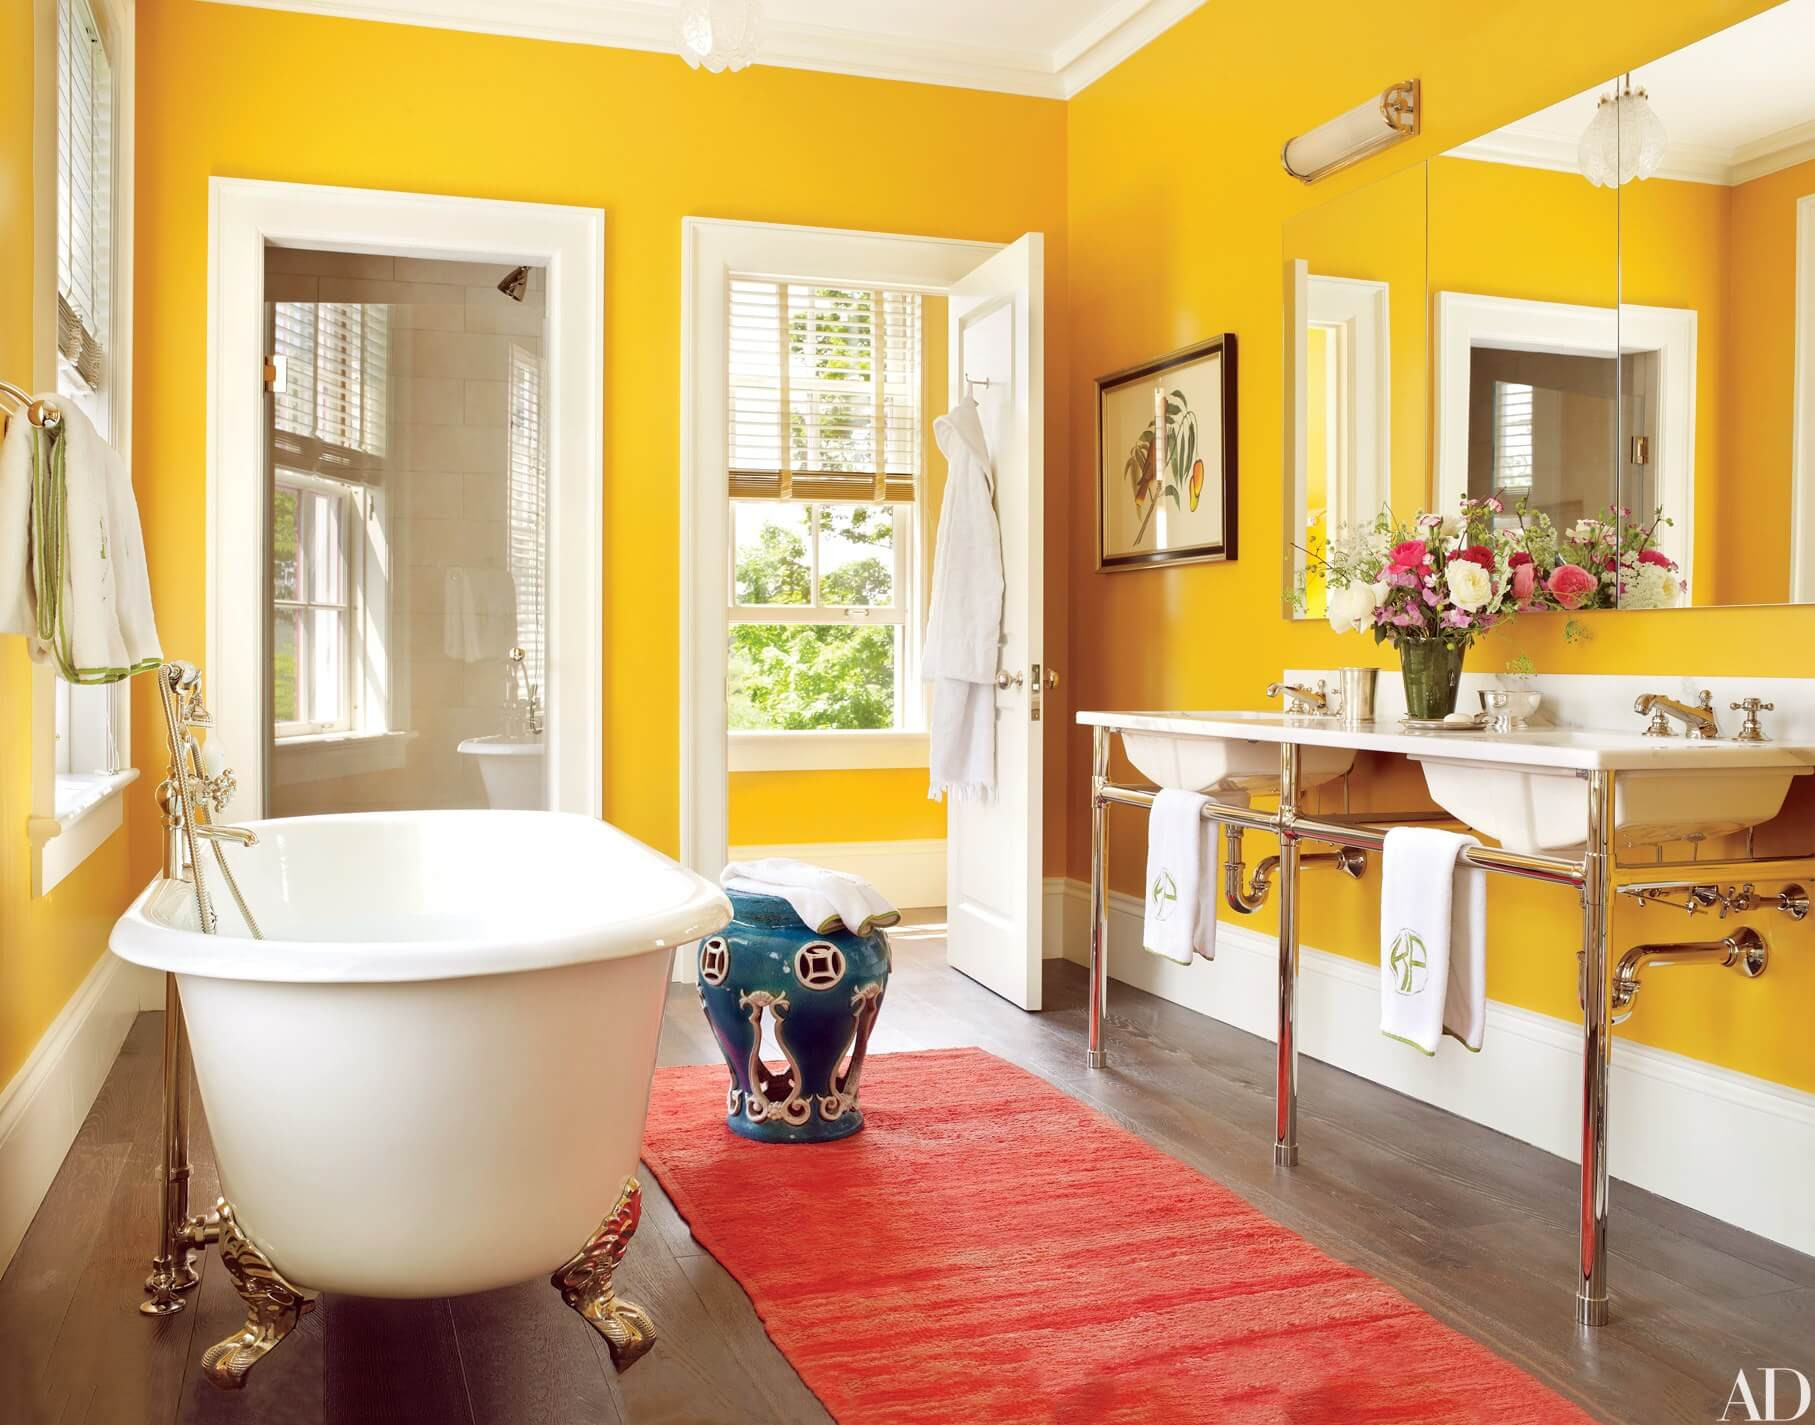 Top Bathroom Colors
 30 Best Bathroom Colors 2018 Interior Decorating Colors